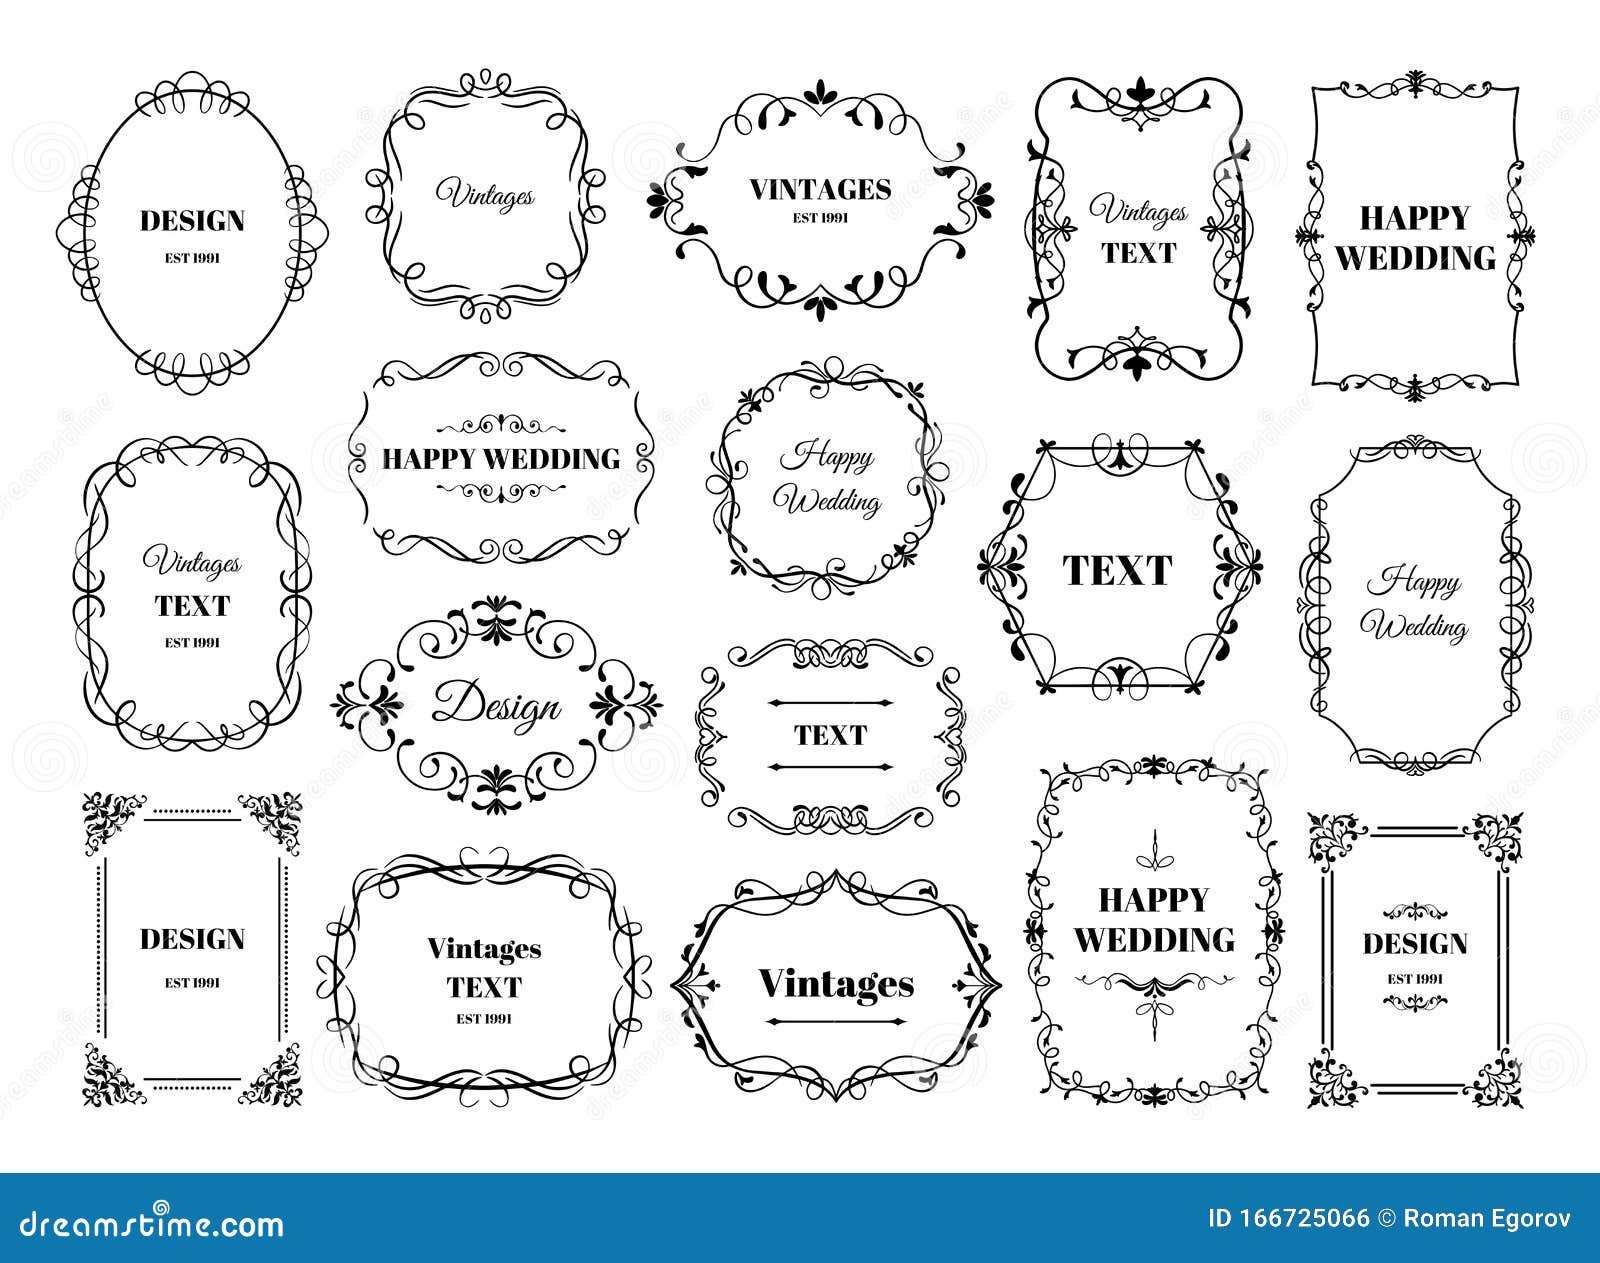 Sticker Vintage Frames and Design Elements- for wedding, invitation